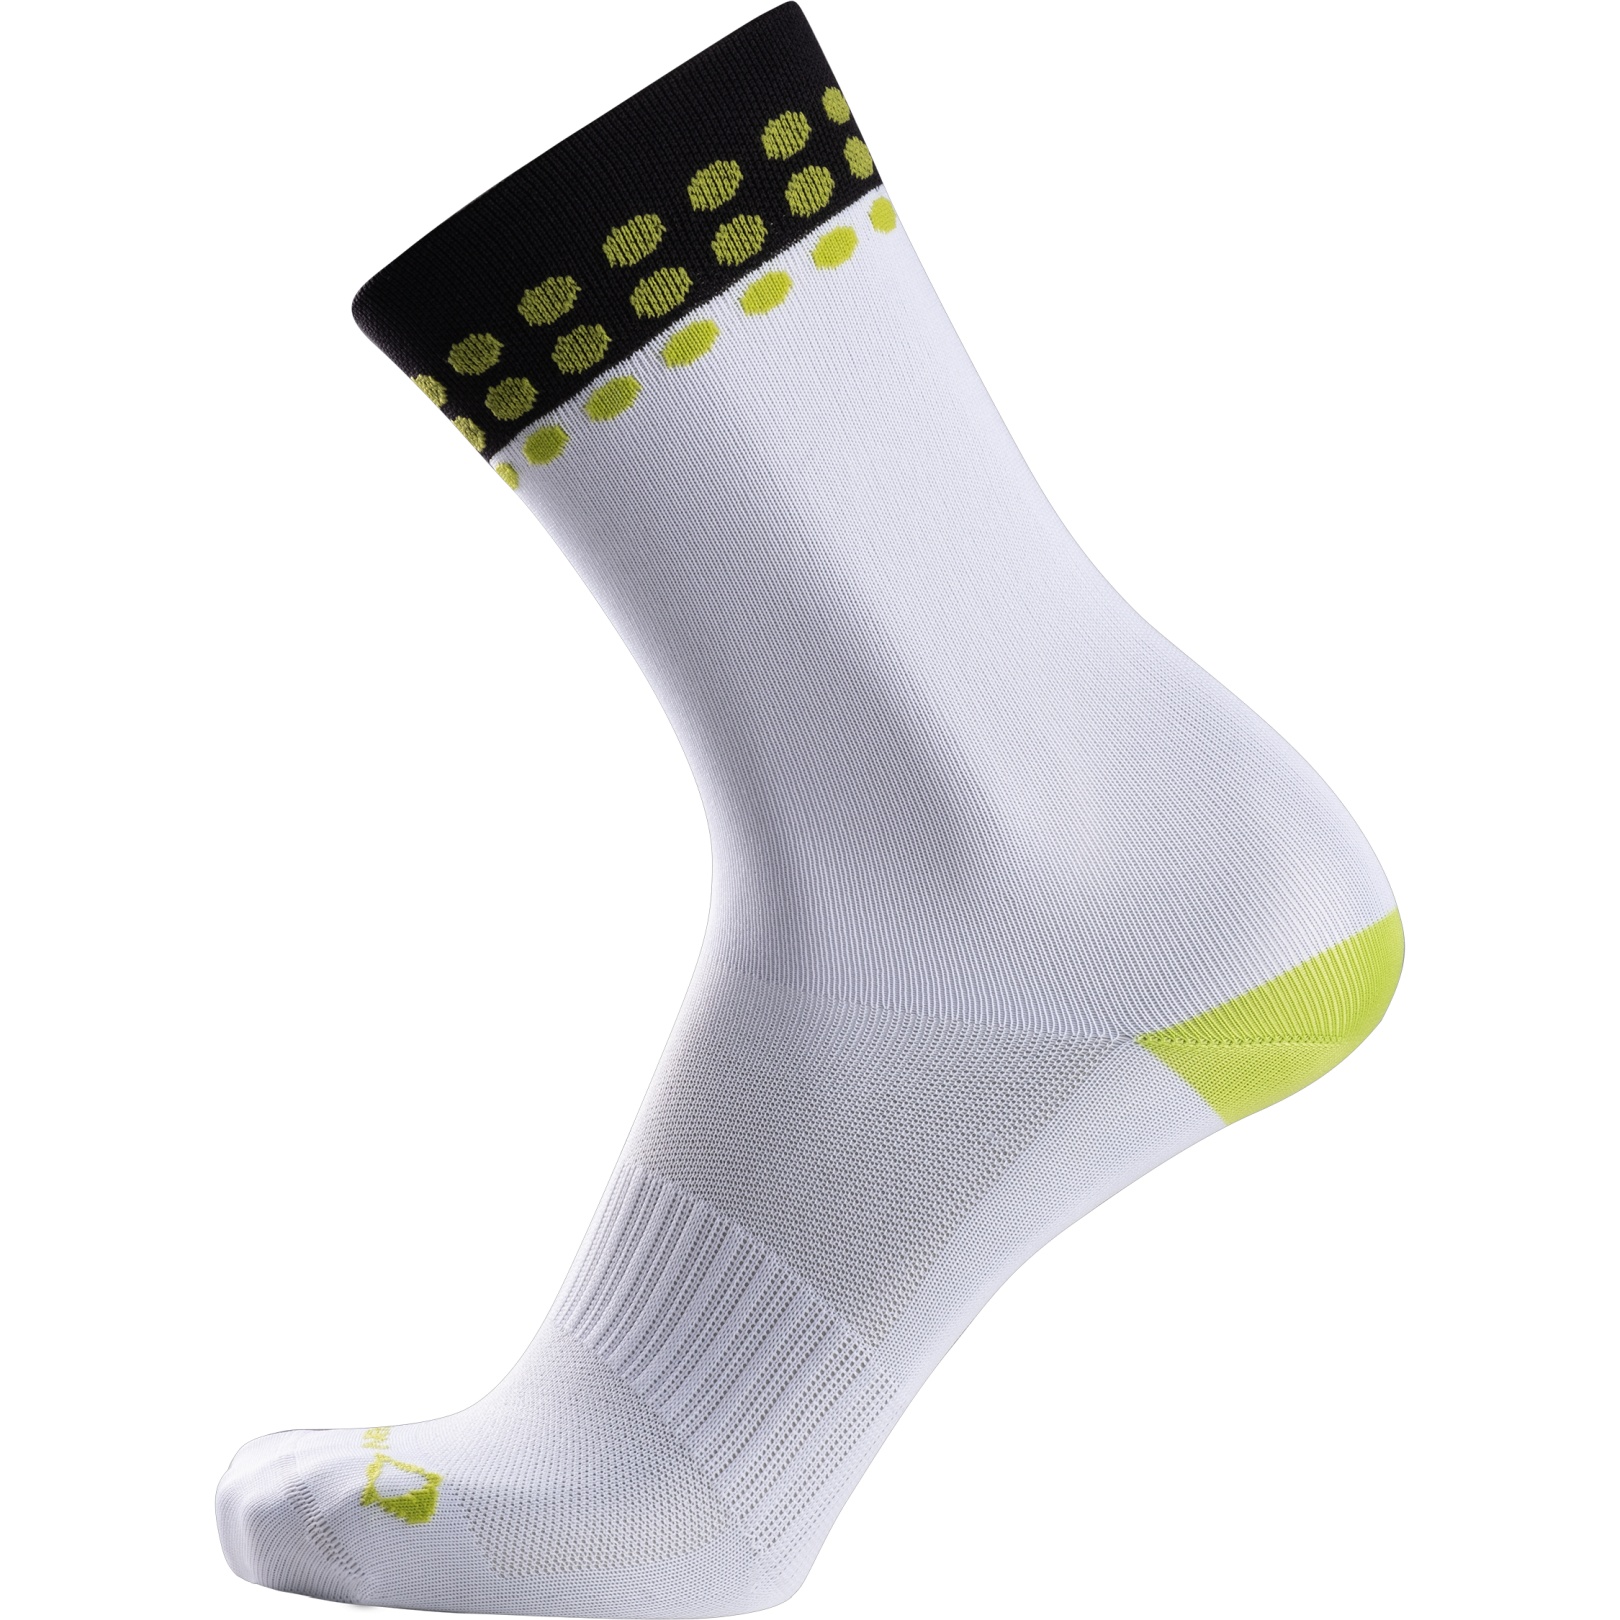 Produktbild von Nalini New Color Socken - weiß/schwarz 4020